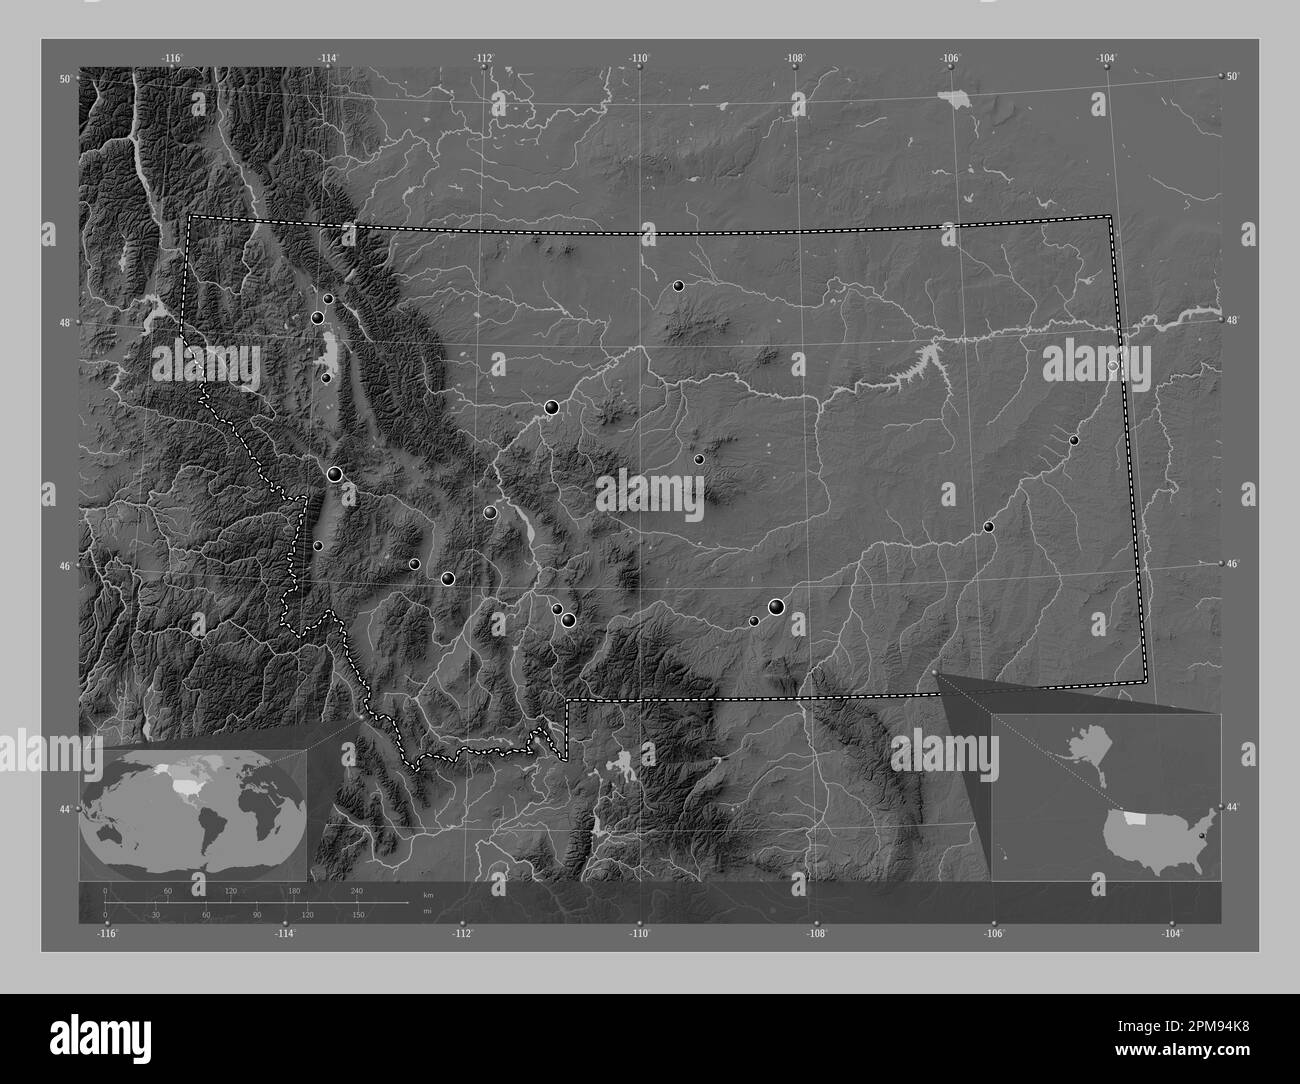 Montana, stato degli Stati Uniti d'America. Mappa in scala di grigi con laghi e fiumi. Posizioni delle principali città della regione. Ausiliario angolo l Foto Stock